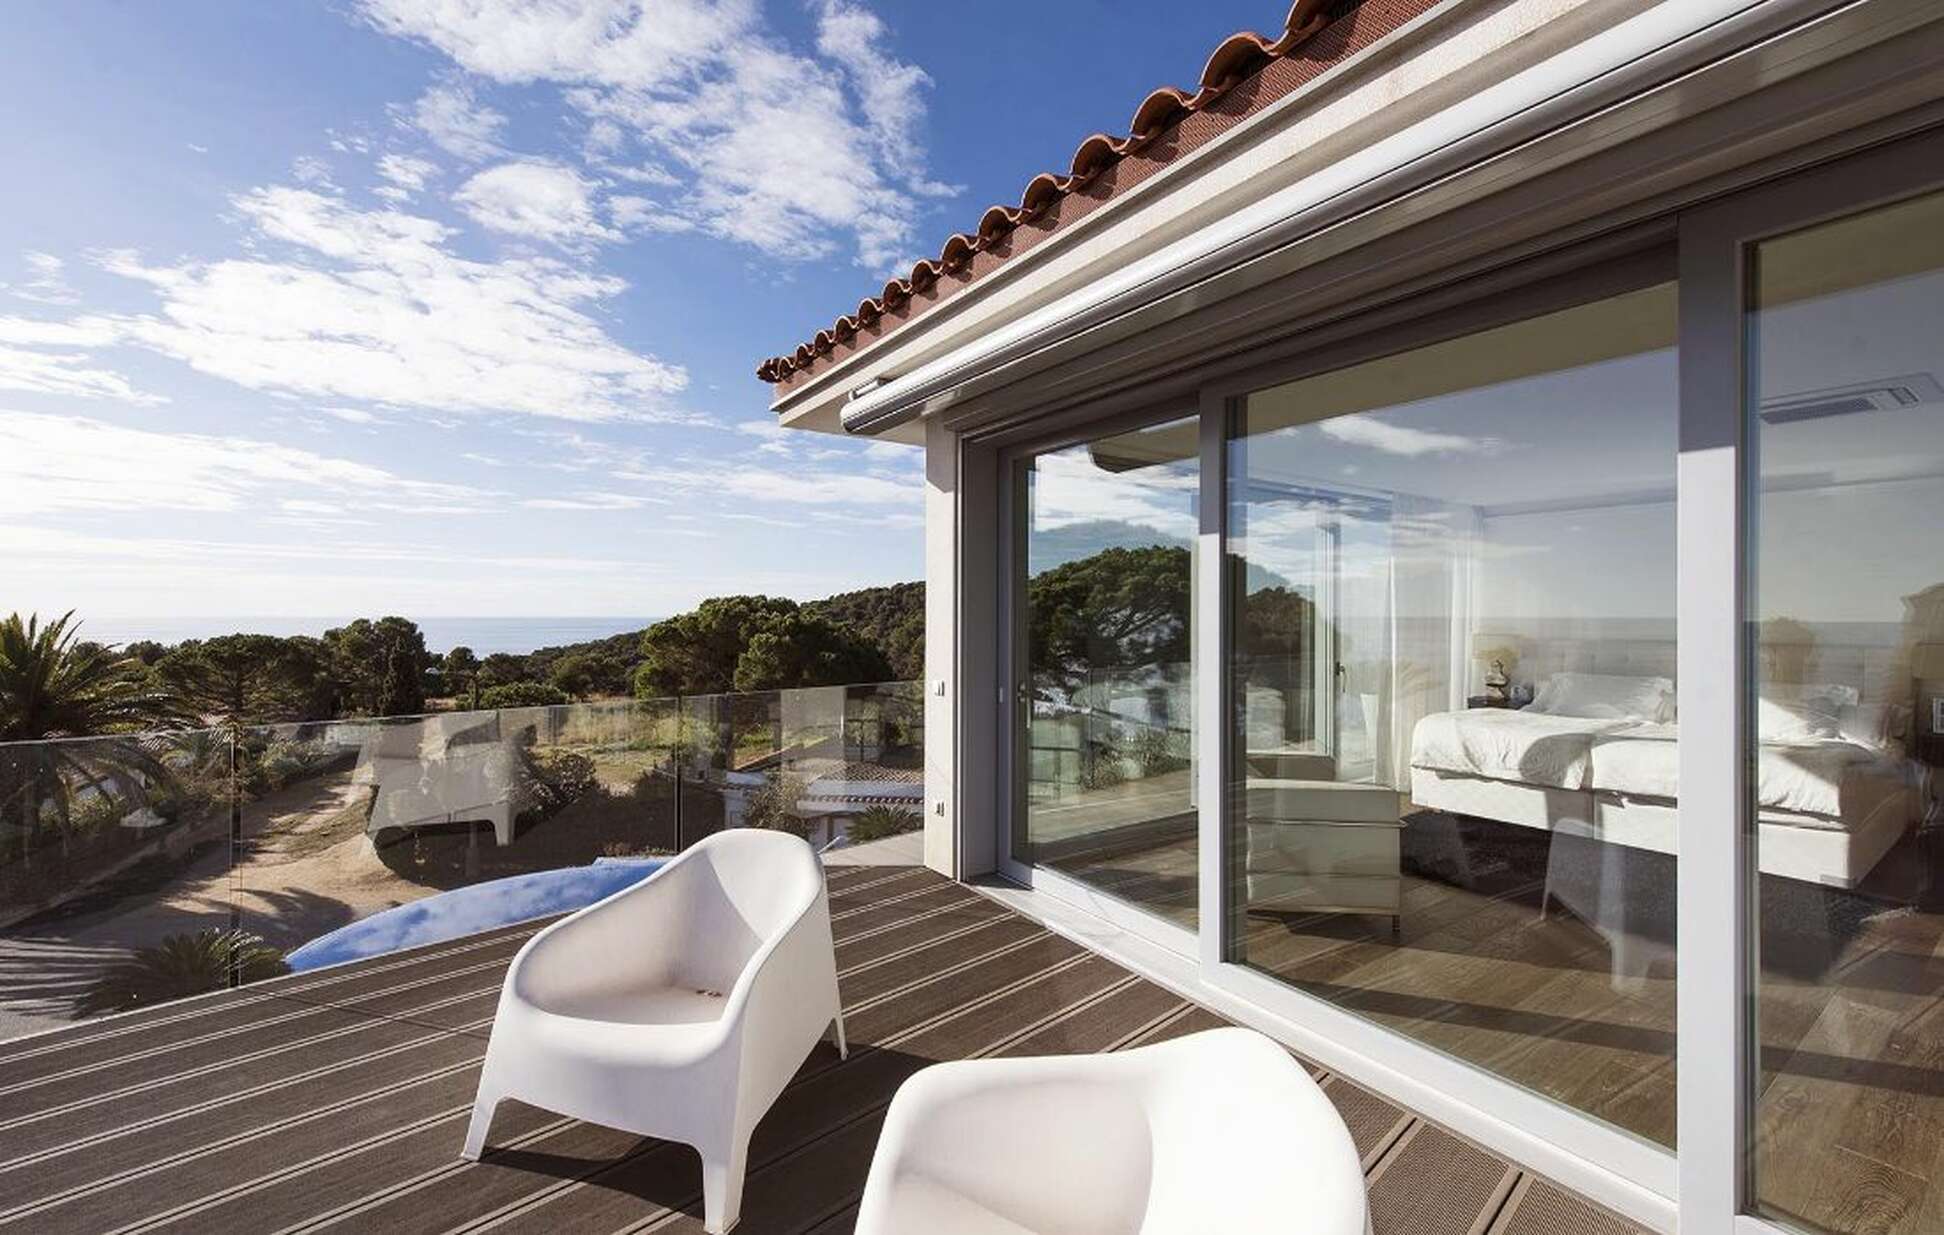 Exclusiva casa amb impressionants vistes al mar a Tossa de Mar, disponible ara.